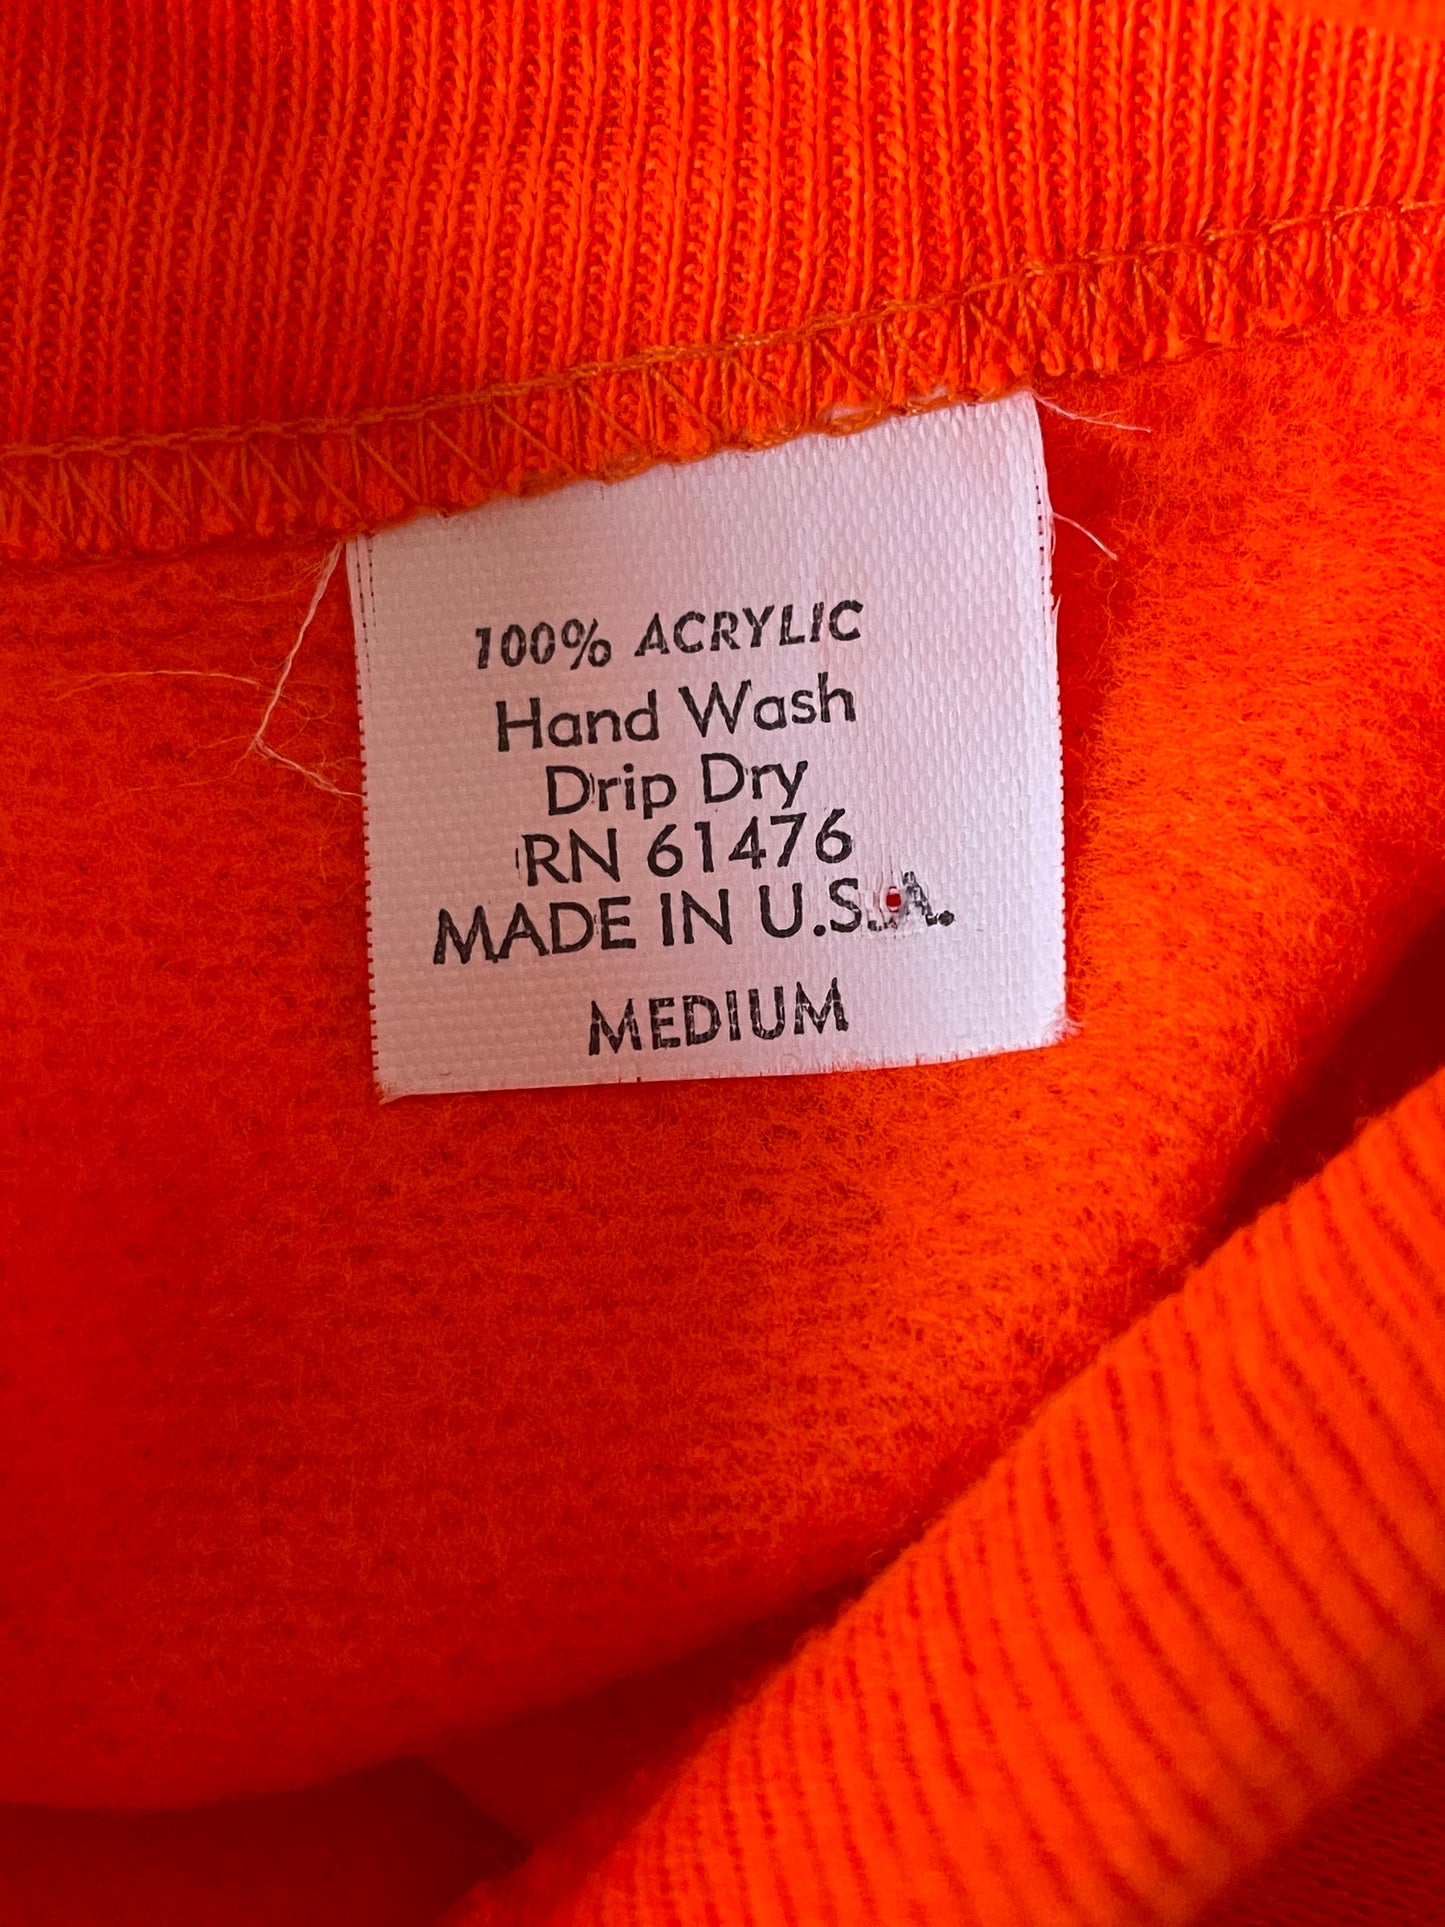 80s Safety Orange Sweatshirt